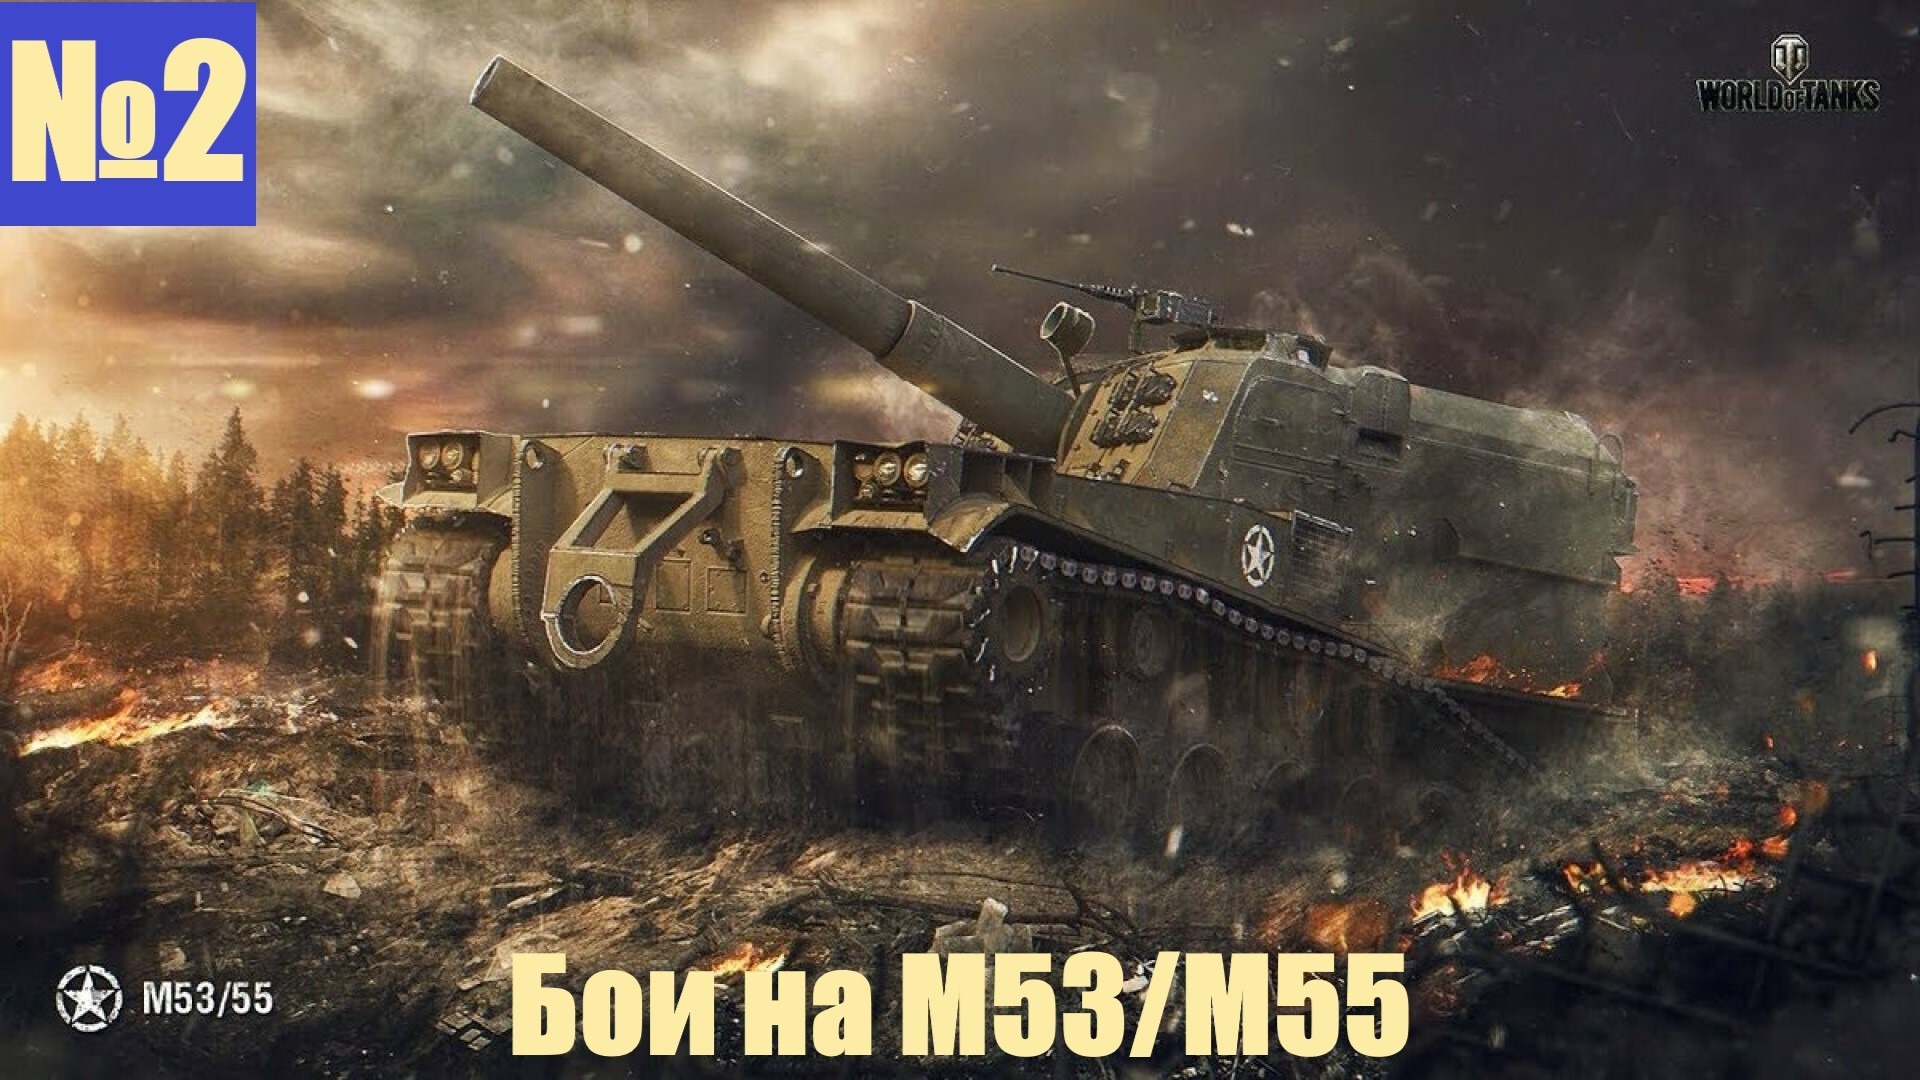 Мир танков м. САУ m53/m55. Артиллерия м53 м55. M53/m55. Арта м53/55 World of Tanks.